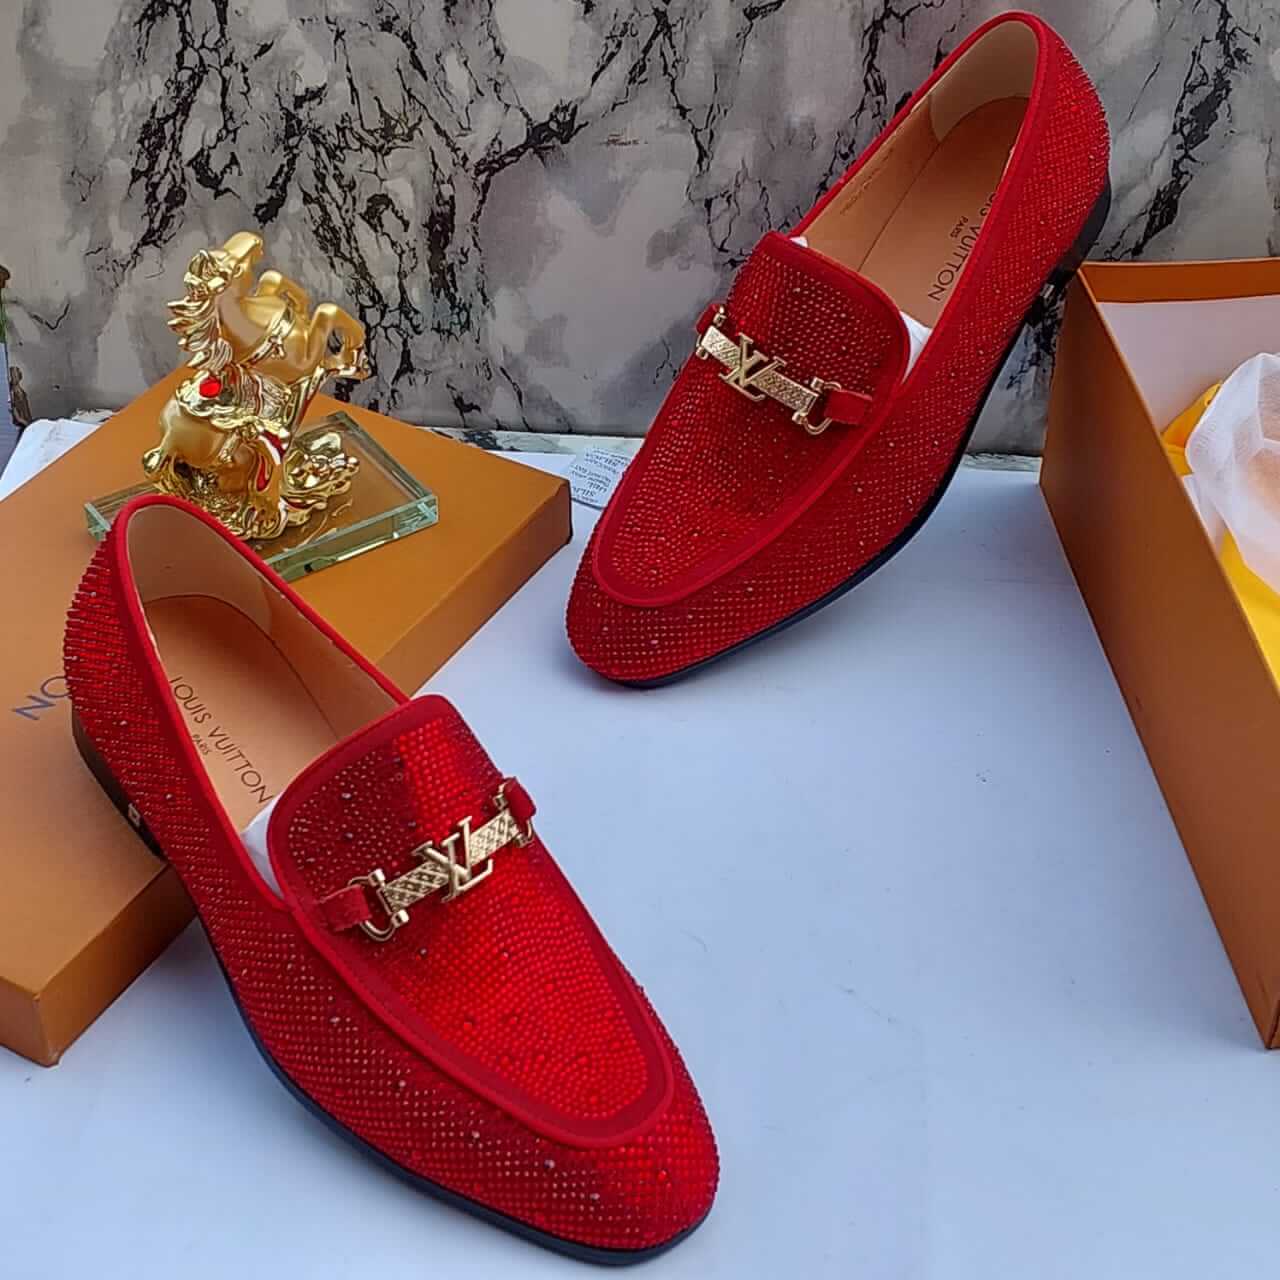 Louis Vuitton Men's LV Red Pane Leather Shoes  Louis vuitton men shoes,  Leather loafer shoes, Leather shoes men